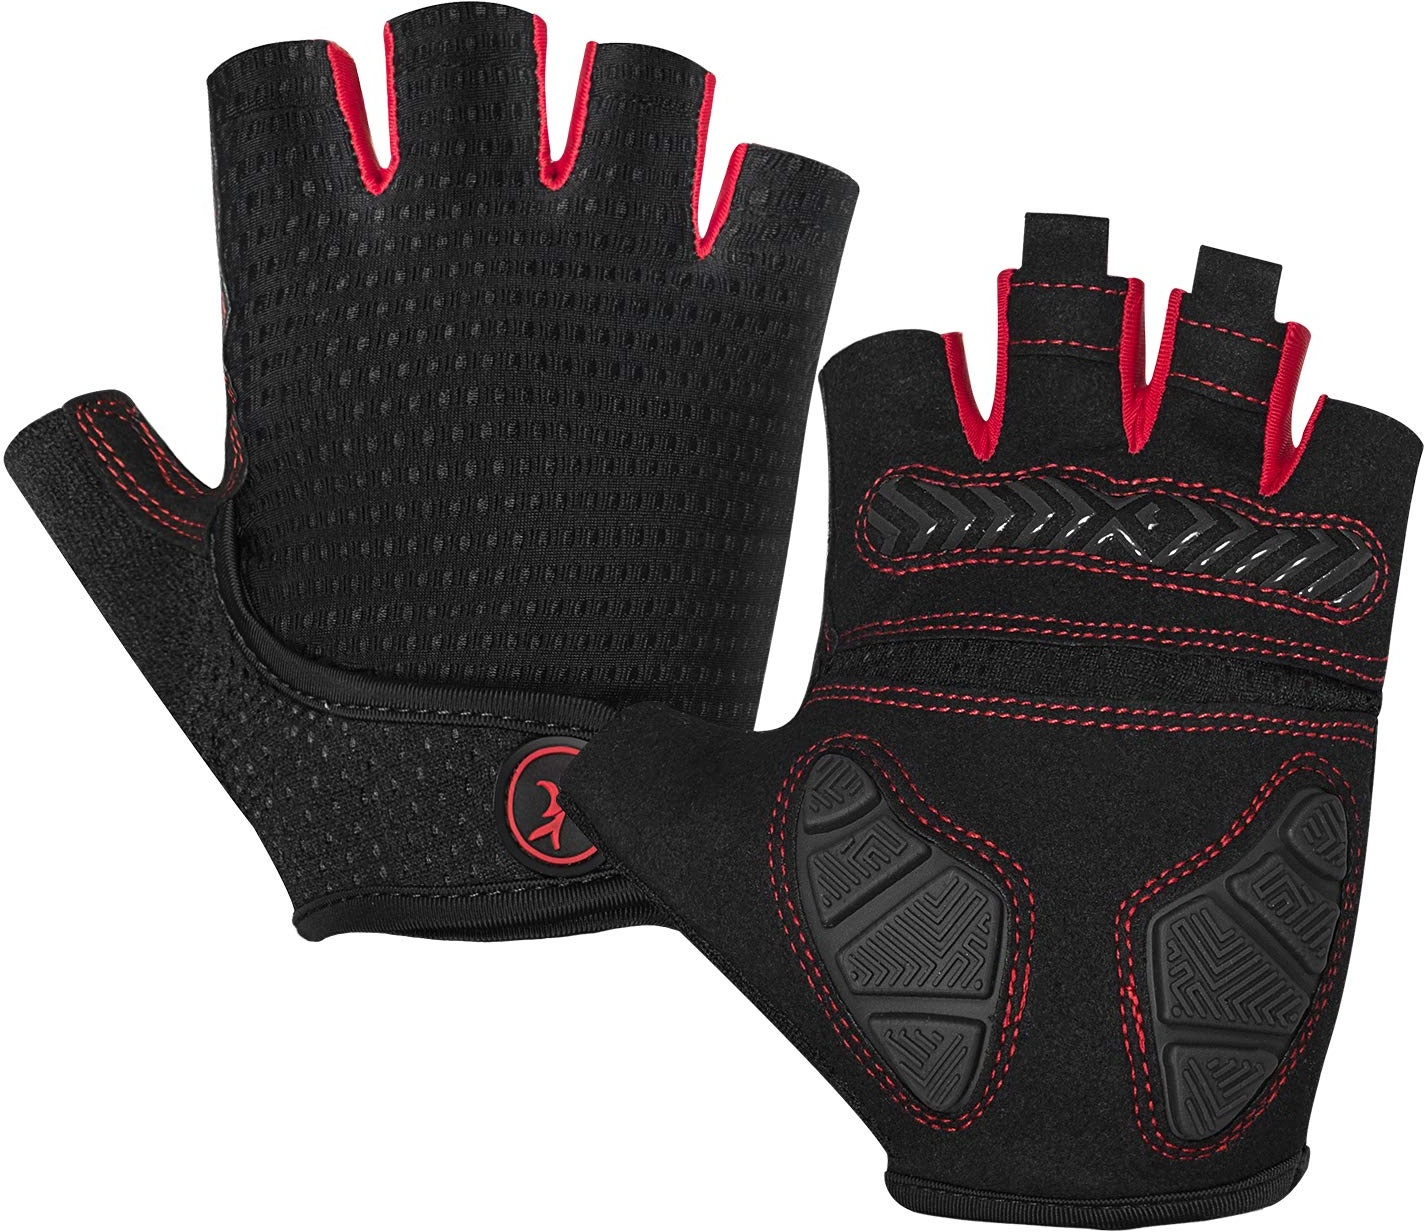 MoreOK Halbfinger-Handschuhe für Gewichtheben, für Outdoor-Sportarten, Radfahren, für Damen und Herren, Schwarz , xl